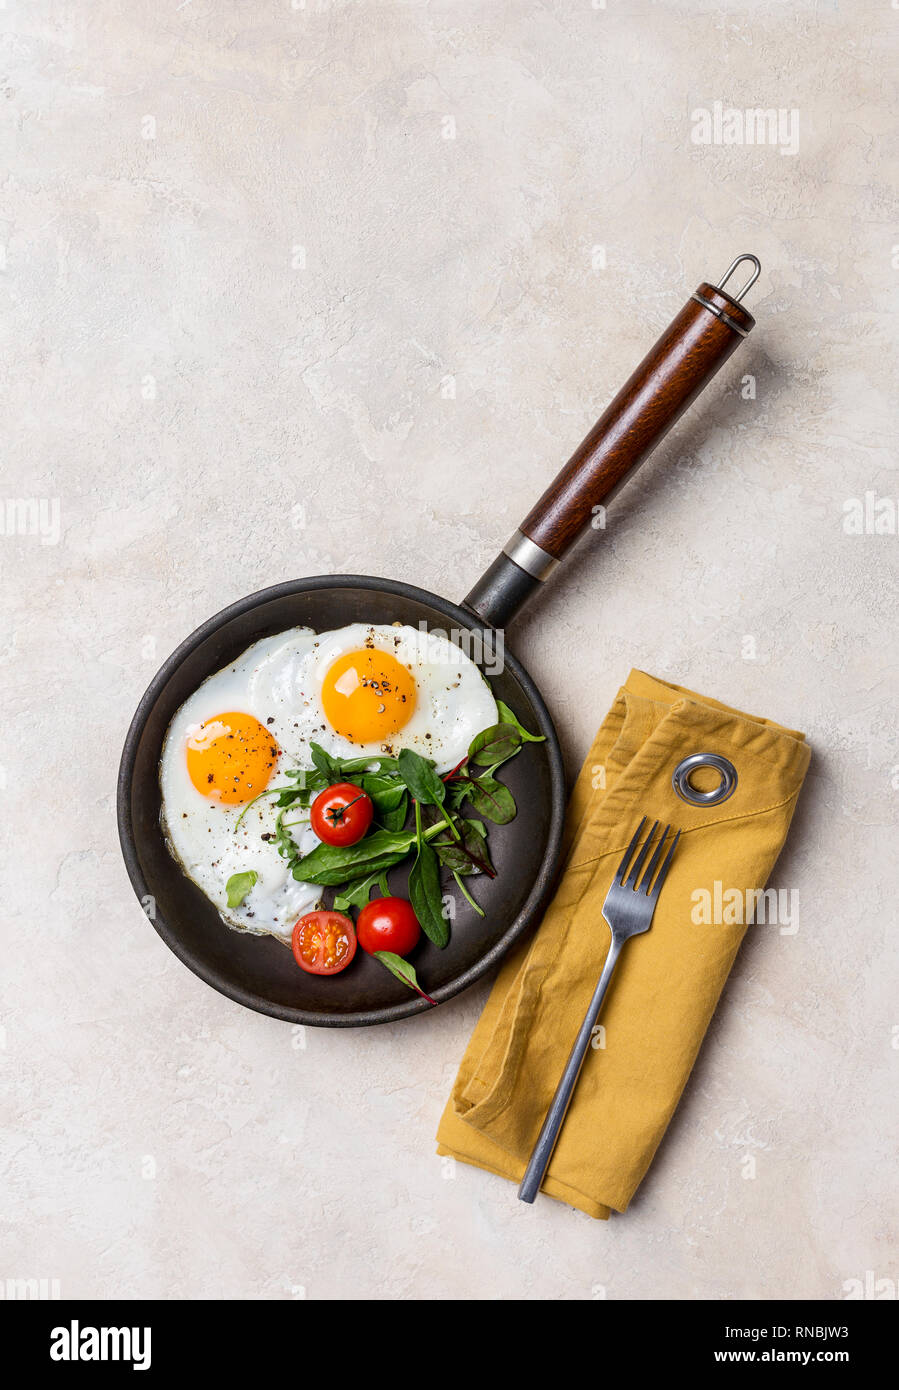 Pan noir avec les œufs, les herbes fraîches et de tomates cerises, fourchette et serviette à fond blanc. Concept d'alimentation saine. Vue de dessus, l'espace libre Banque D'Images